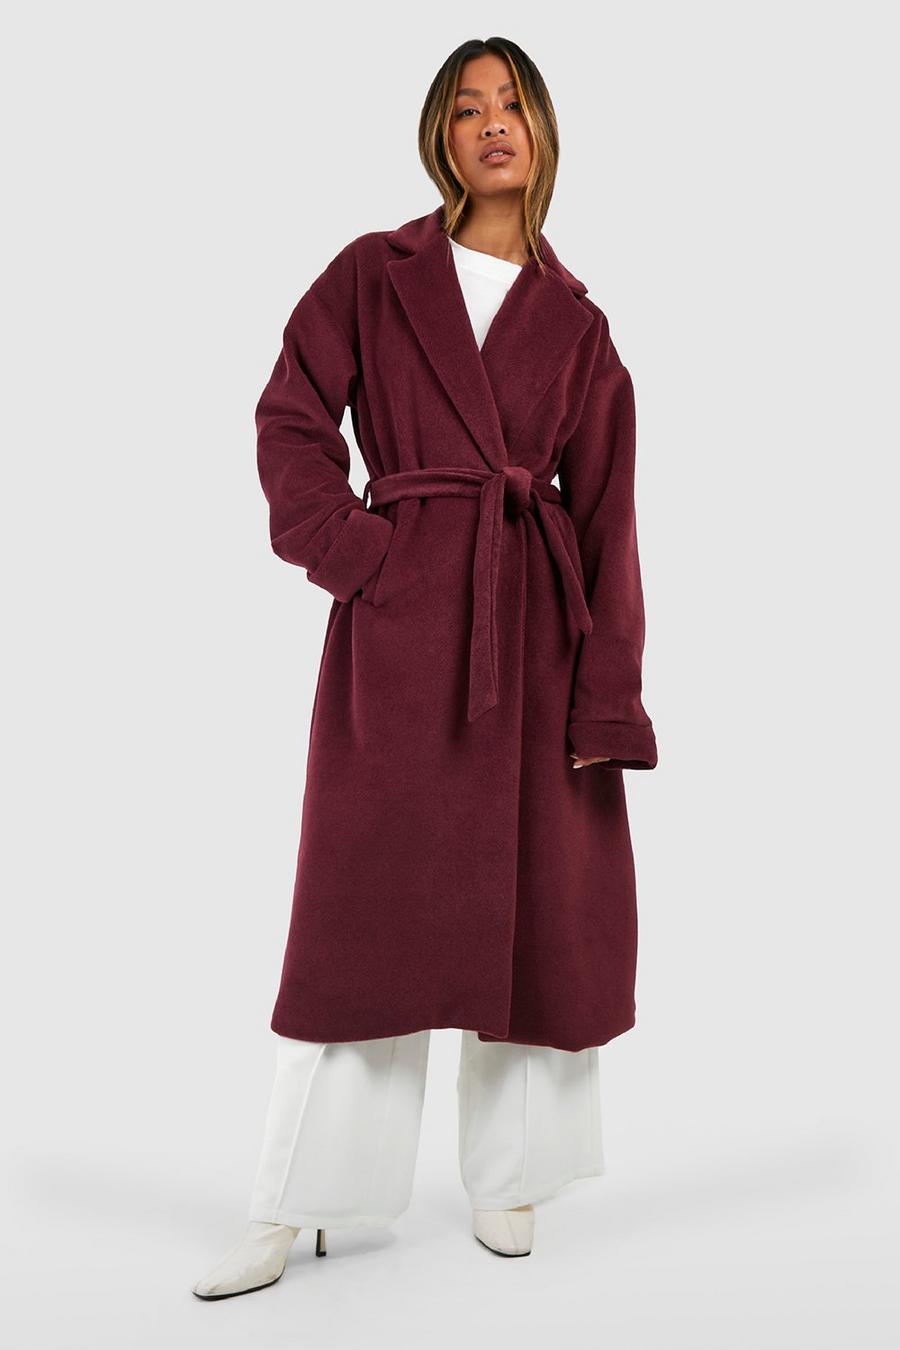 Cappotto effetto lana con trama, cintura e dettagli sui polsini, Wine